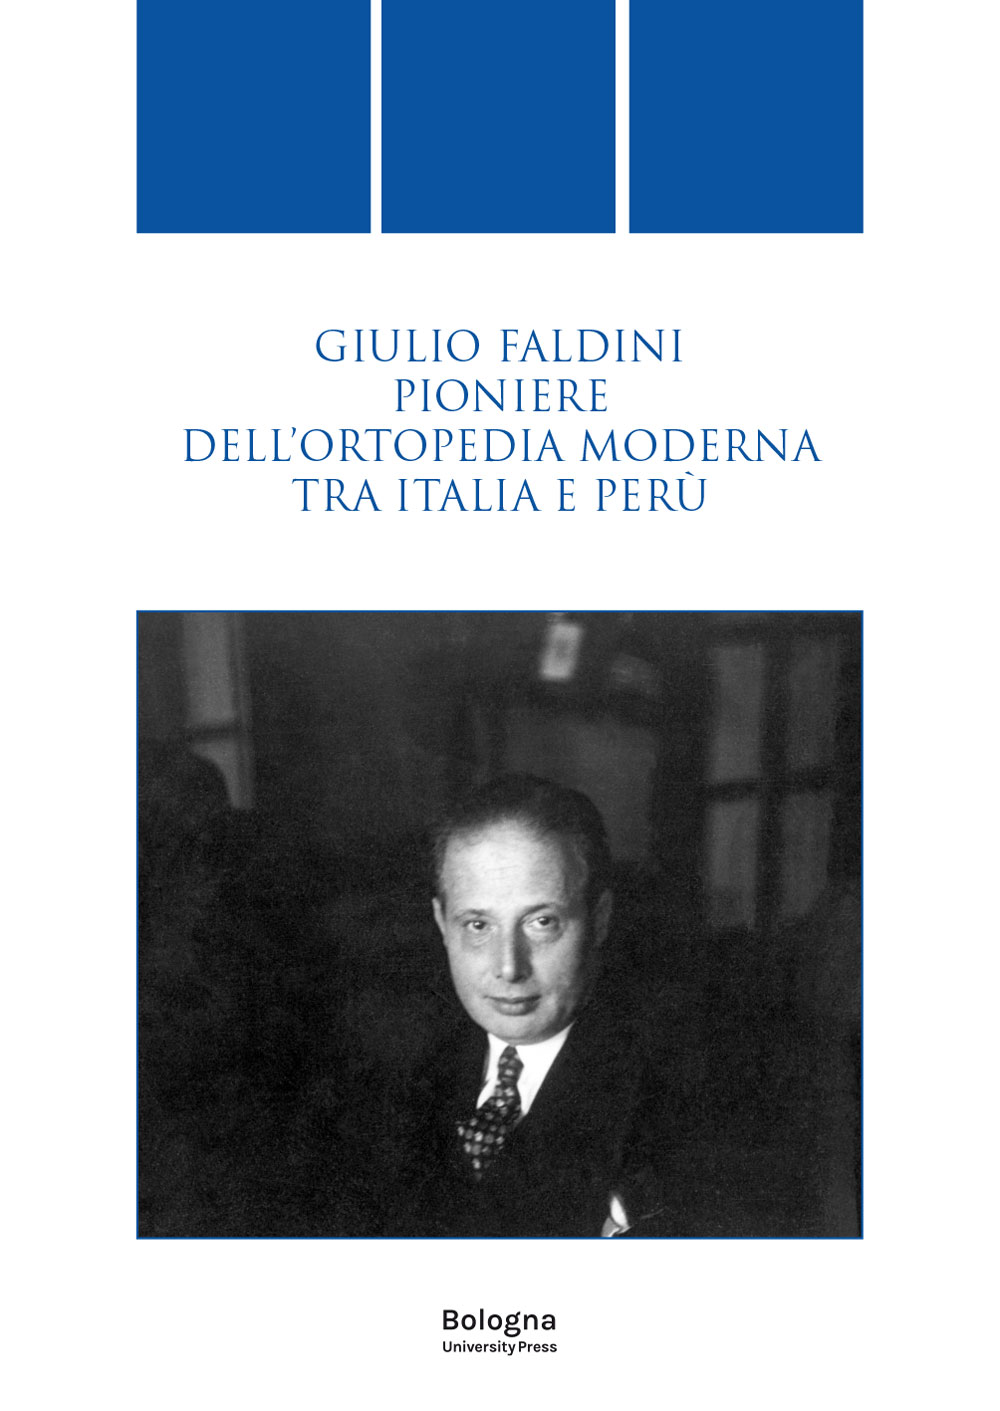 GIULIO FALDINI PIONIERE DELL’ORTOPEDIA MODERNA TRA ITALIA E PERÙ - Bologna University Press